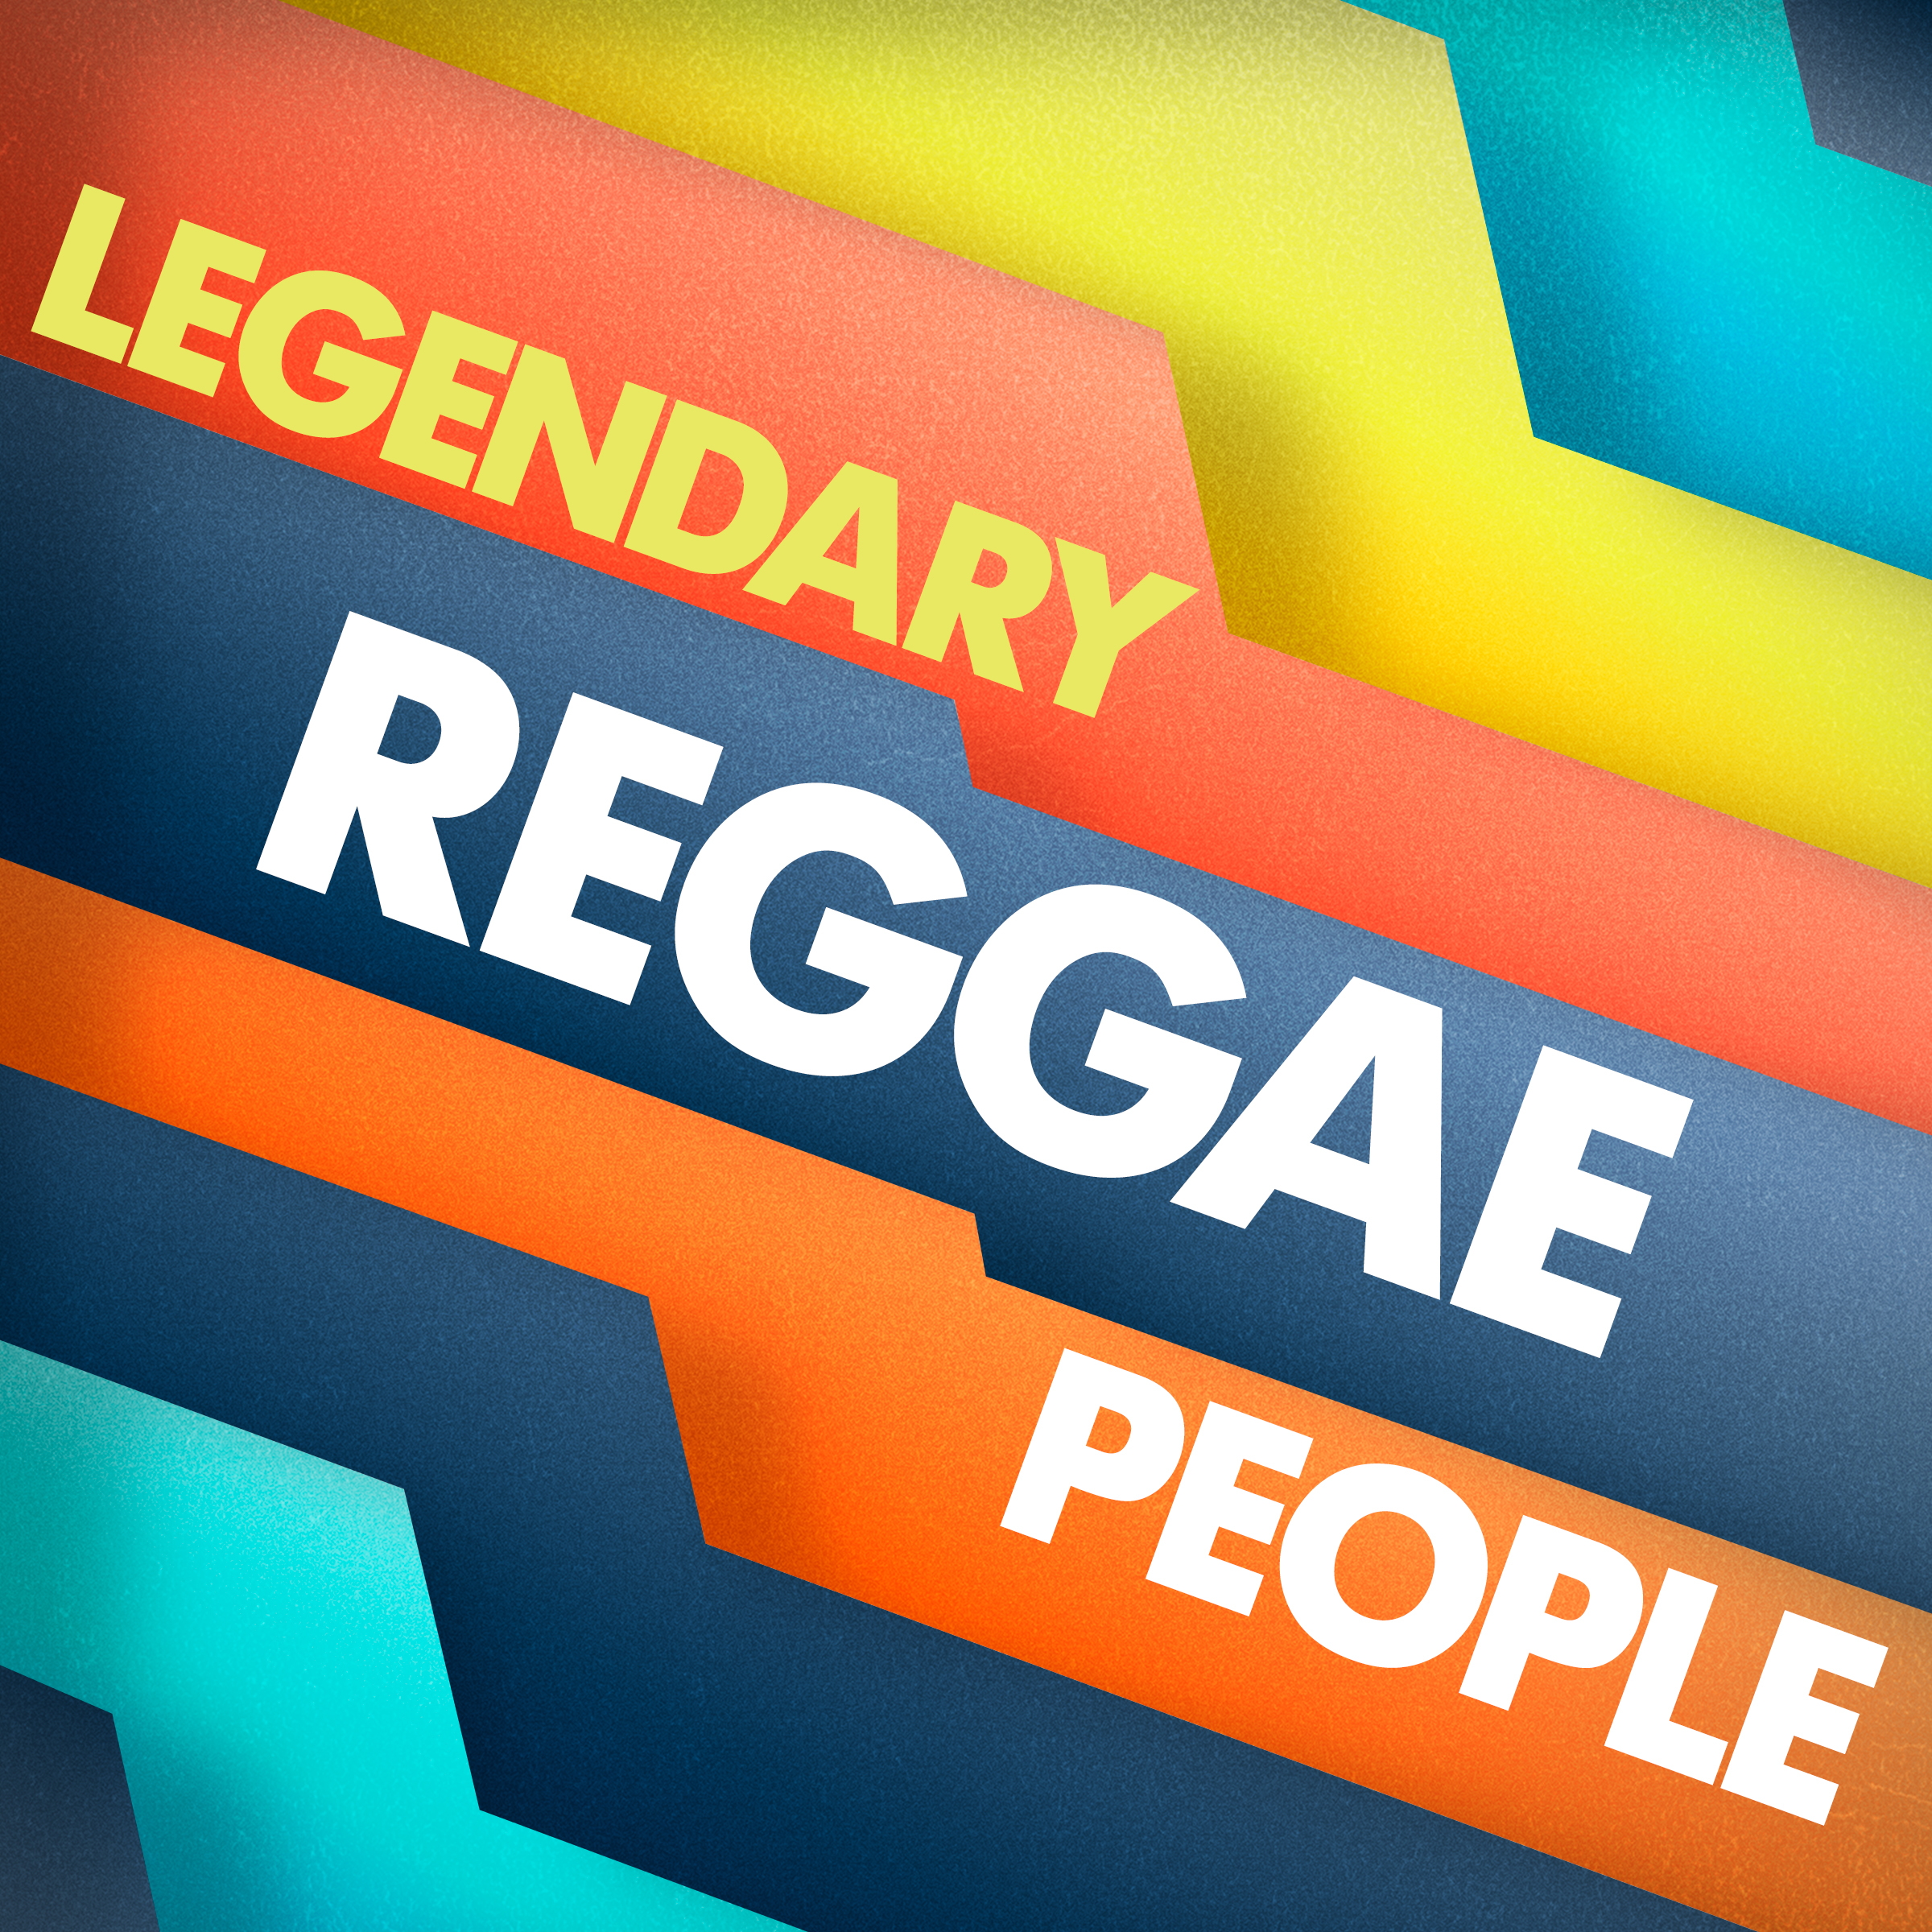 Legendary Reggae People